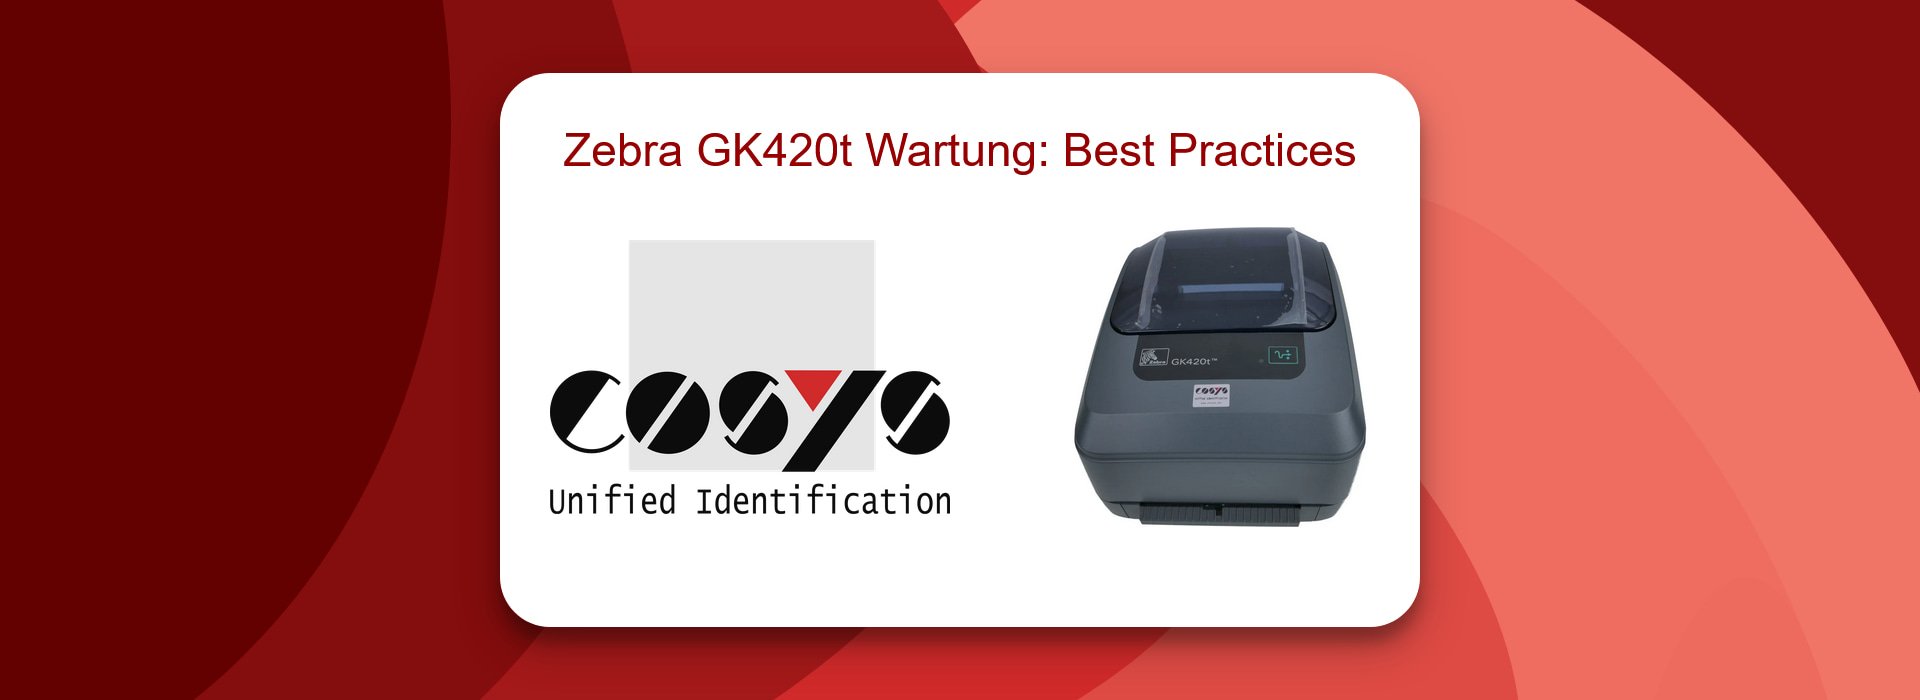 Zebra GK420t Wartung: Best Practices